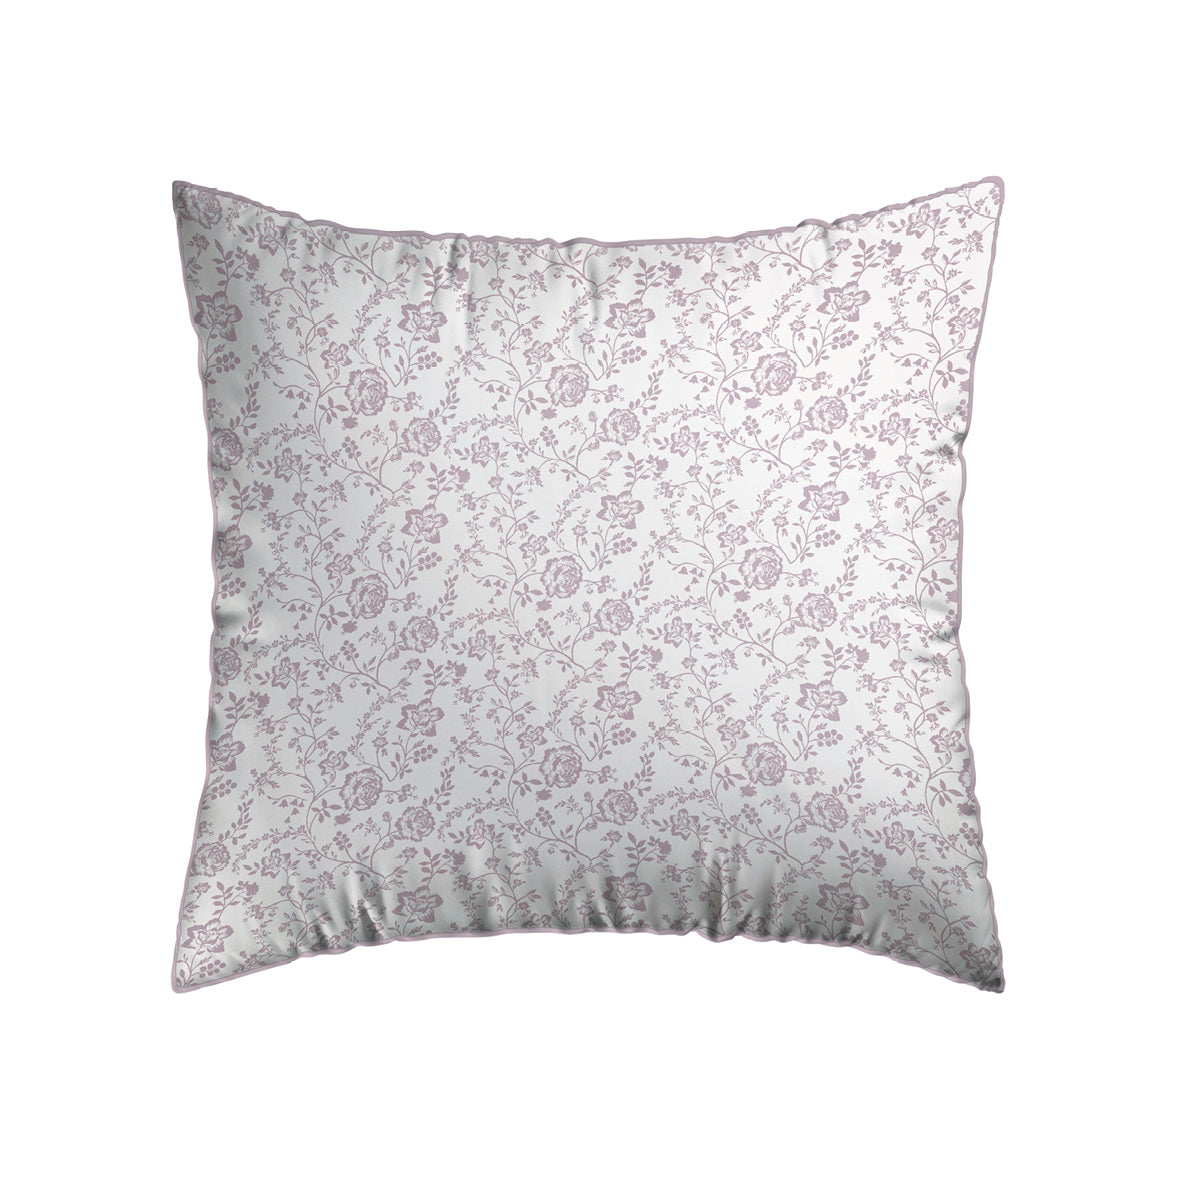 Pillowcase(s) cotton satin - Floraison de Roses White / Lavender